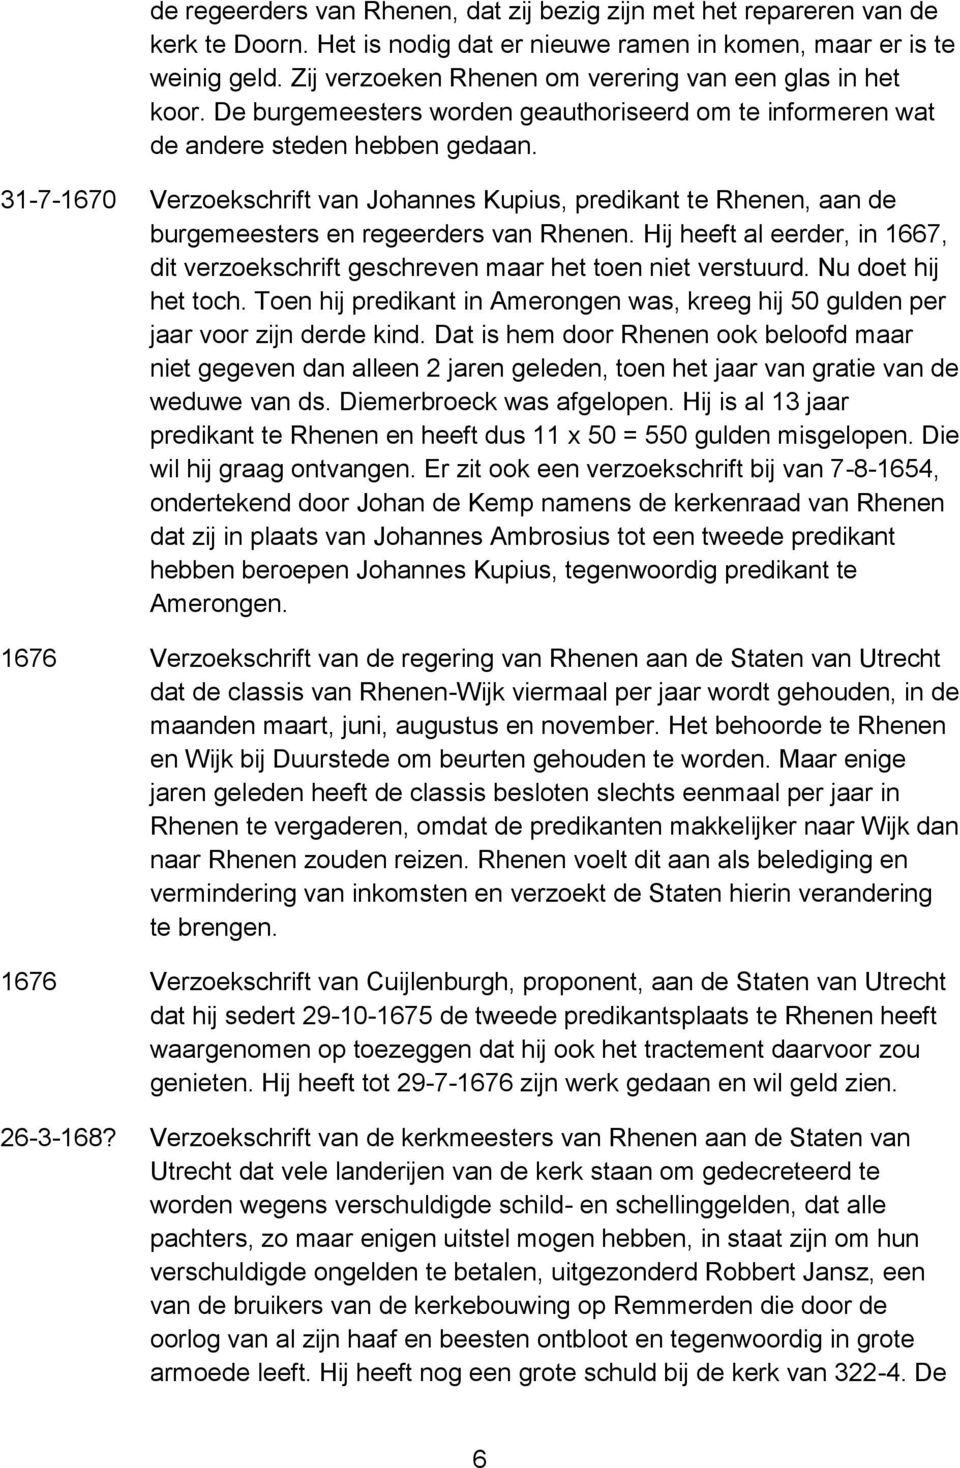 31-7-1670 Verzoekschrift van Johannes Kupius, predikant te Rhenen, aan de burgemeesters en regeerders van Rhenen.